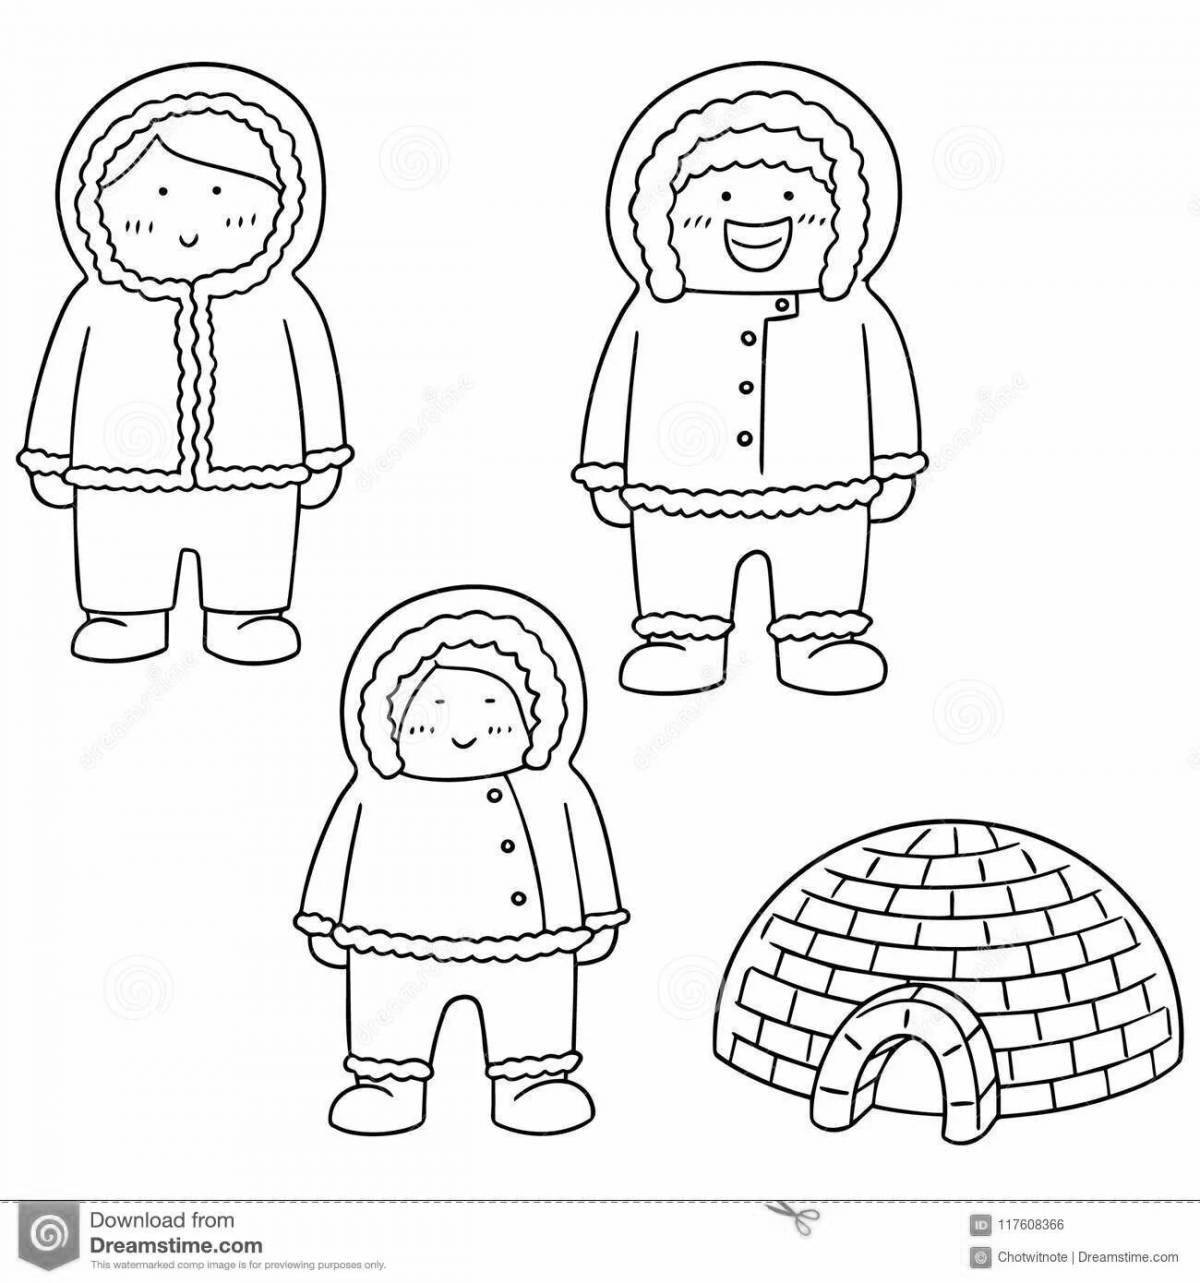 Fun coloring book for Eskimo children